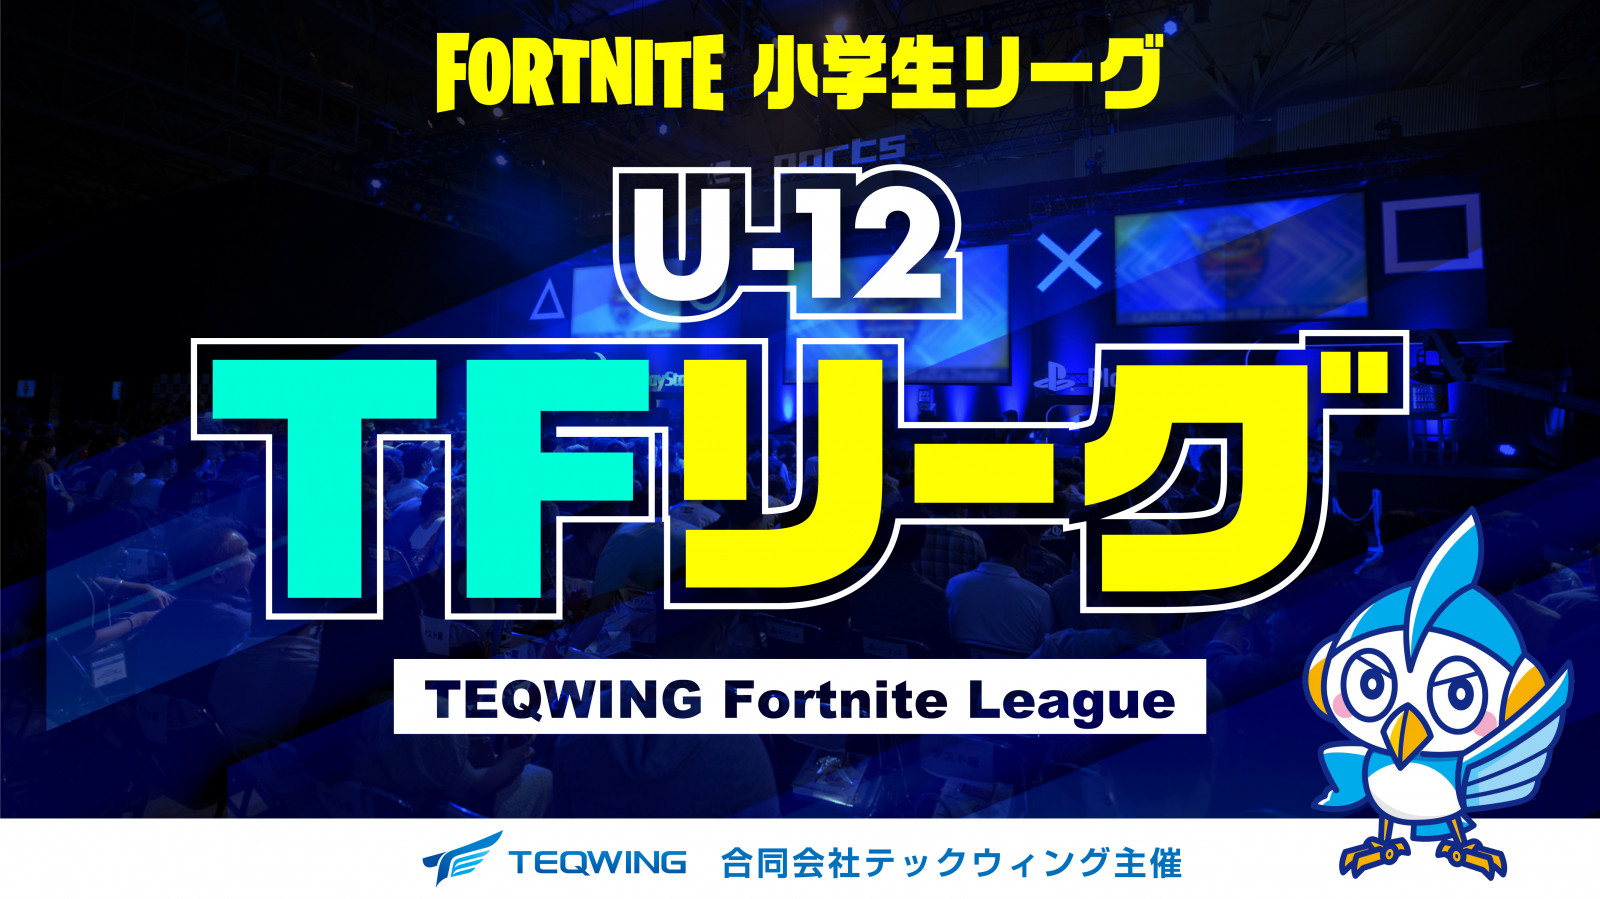 【大会情報】Fortnite小学生リーグ U-12 TFリーグ 第5戦【2021年8月15日】